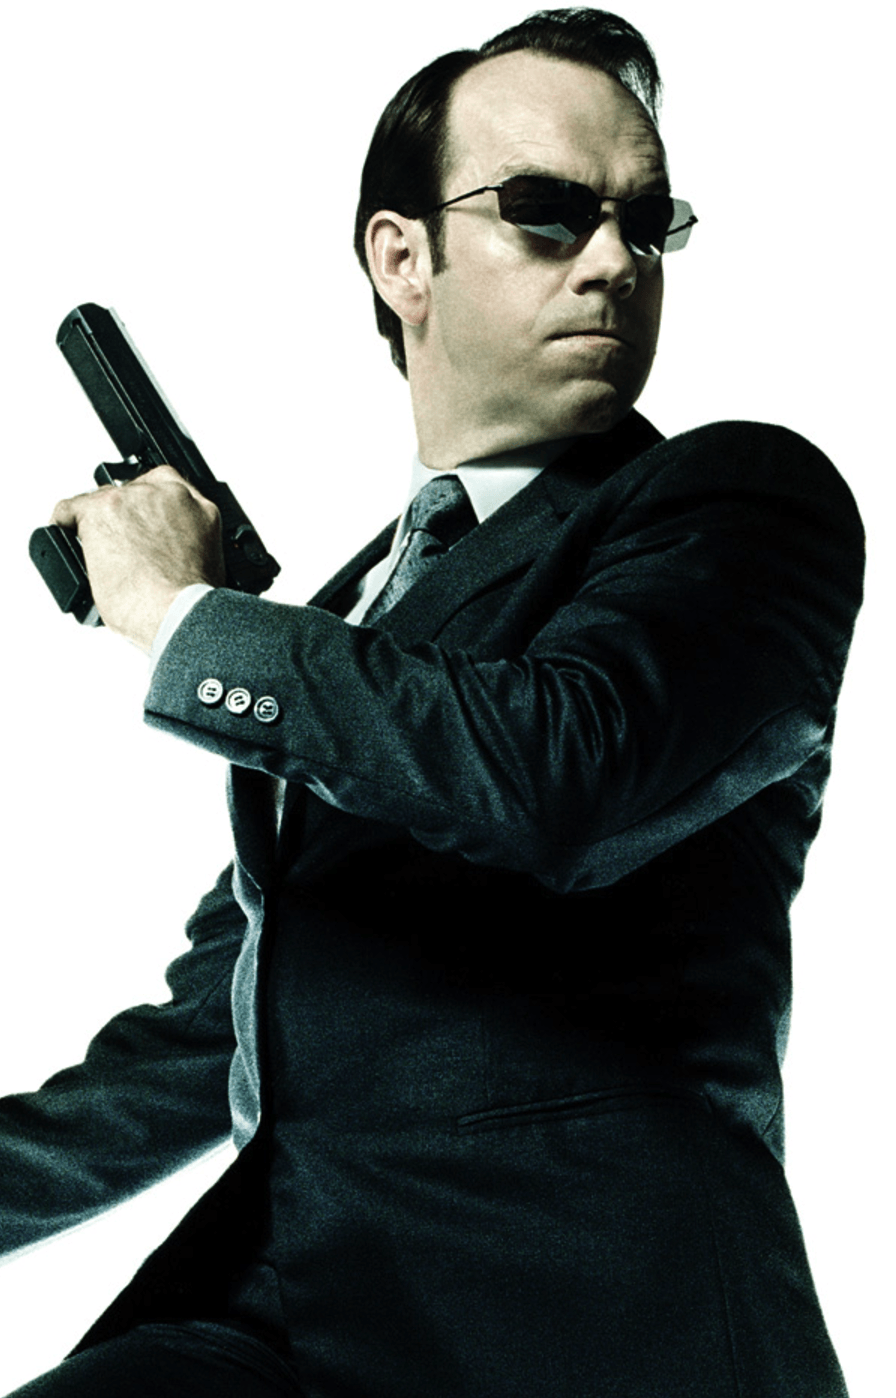 Agent Smith